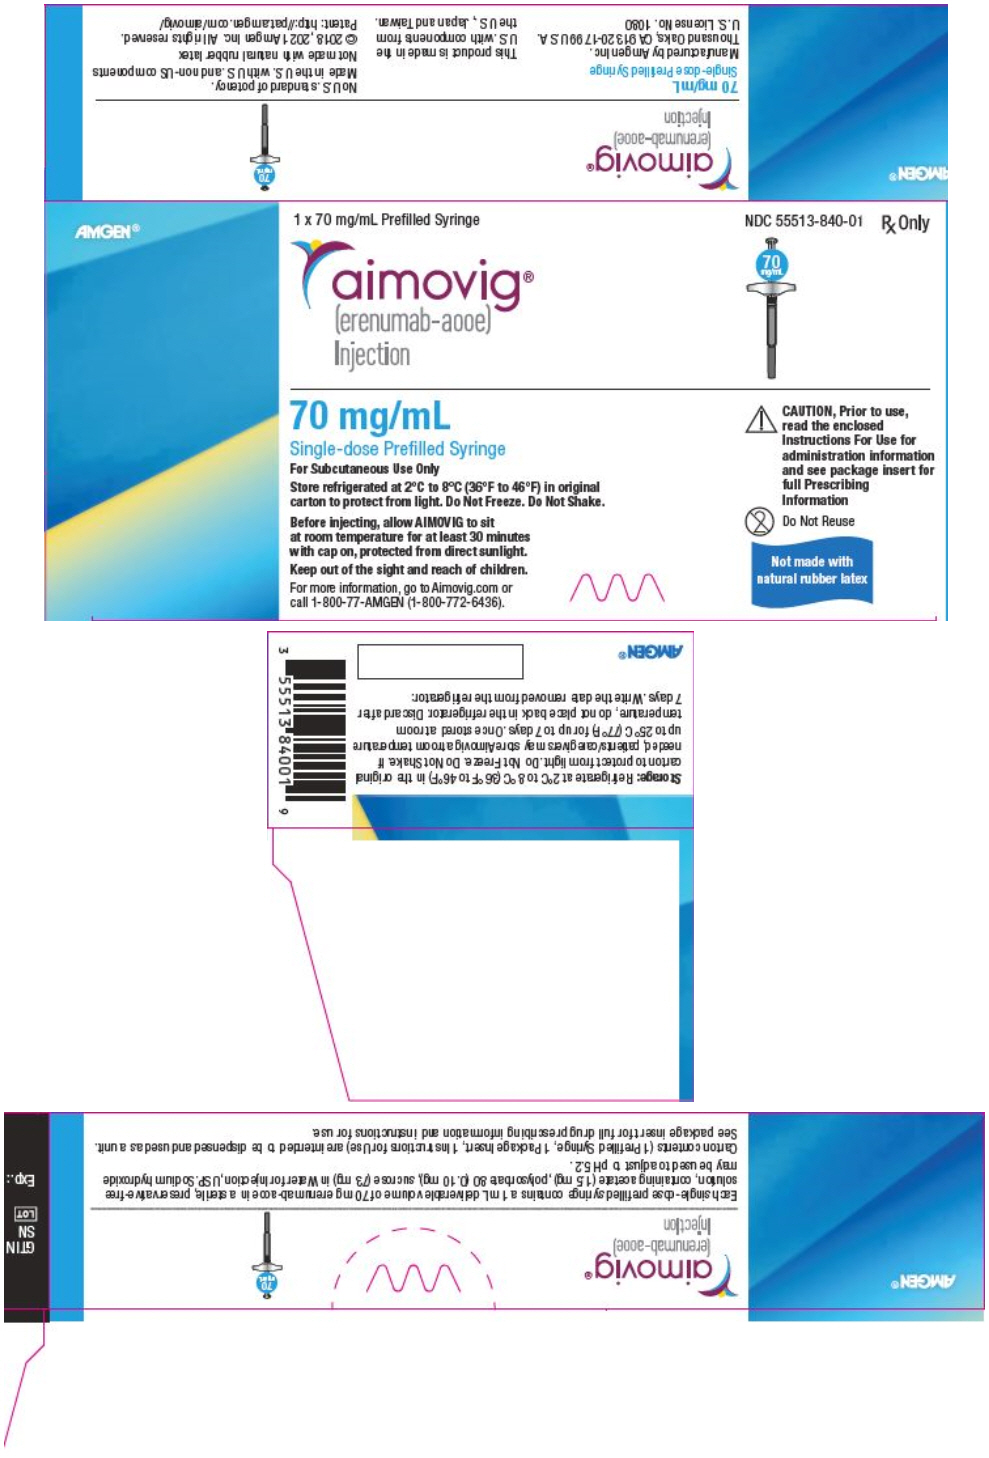 PRINCIPAL DISPLAY PANEL - 70 mg/mL Syringe Carton